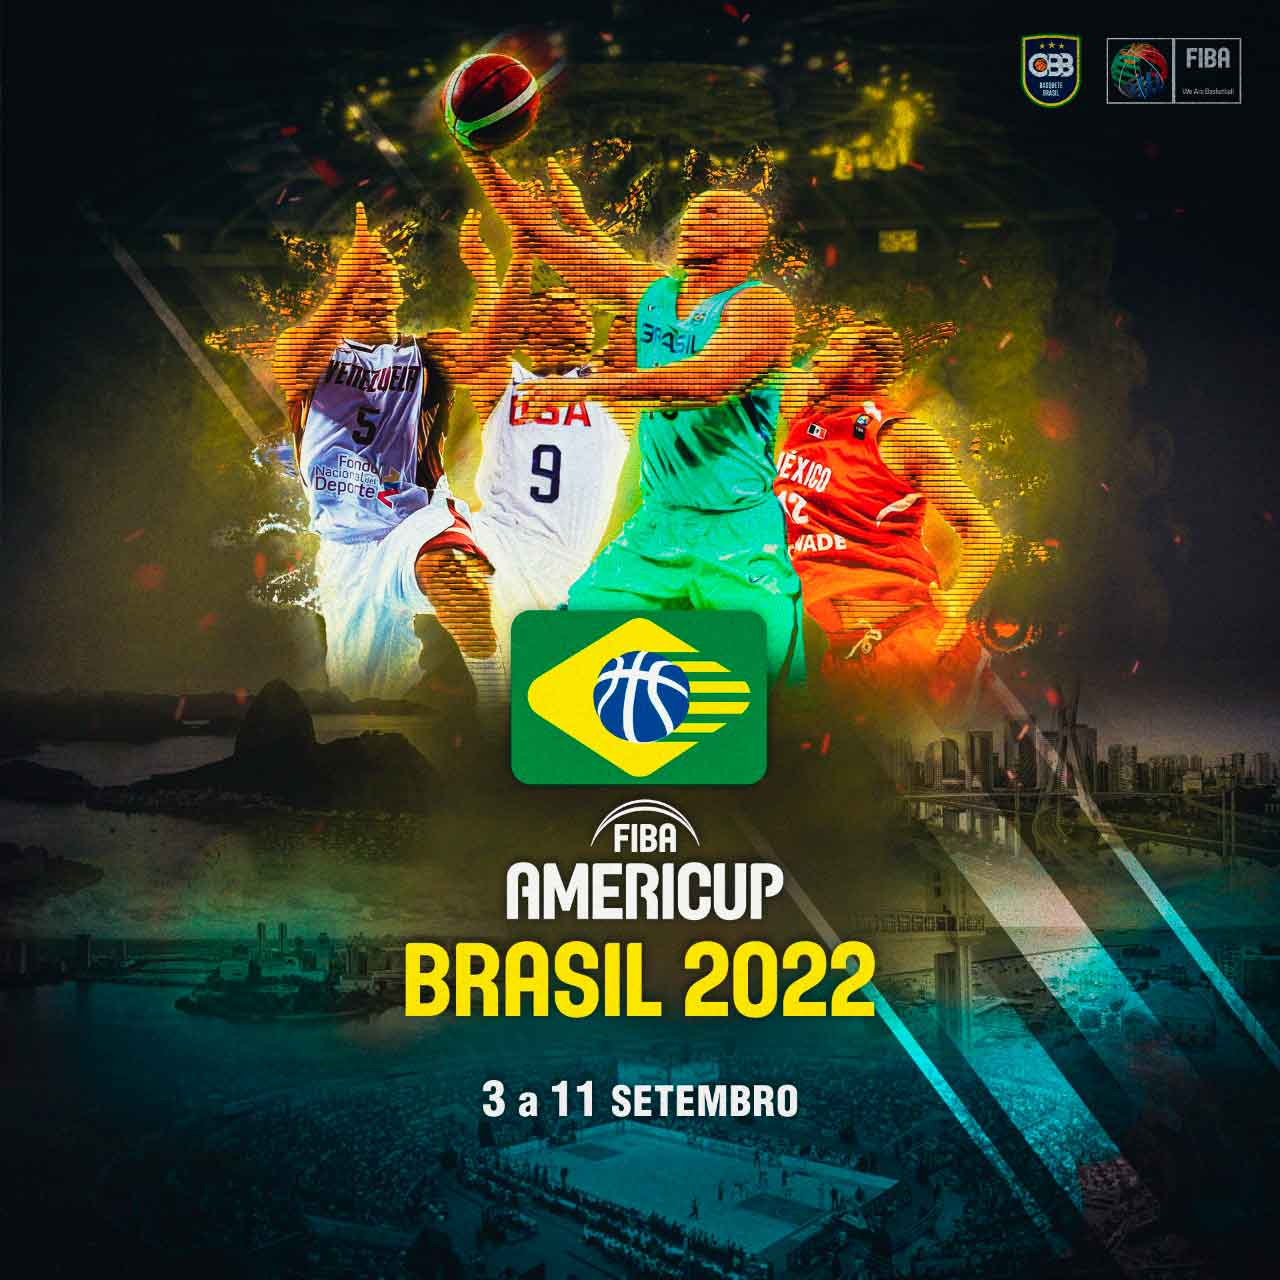 Parceria entre a empresa de Daniel Alves e a CBB traz a Americup 2022 para o Brasil